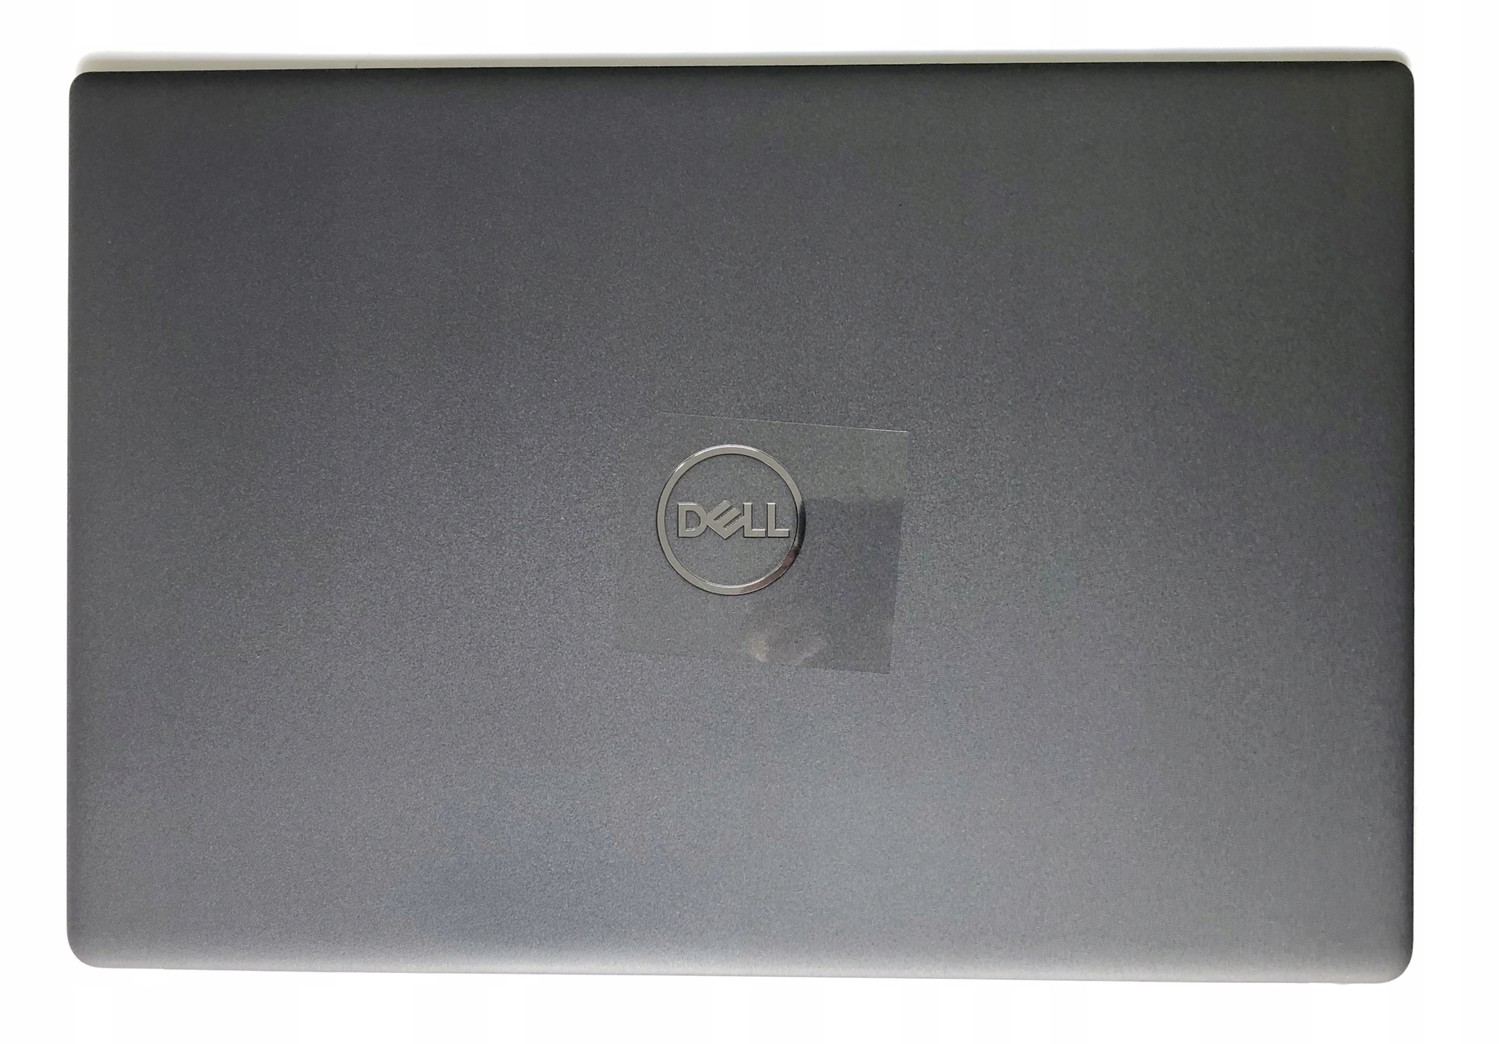 Dell Latitude 3510 nová originální klapka